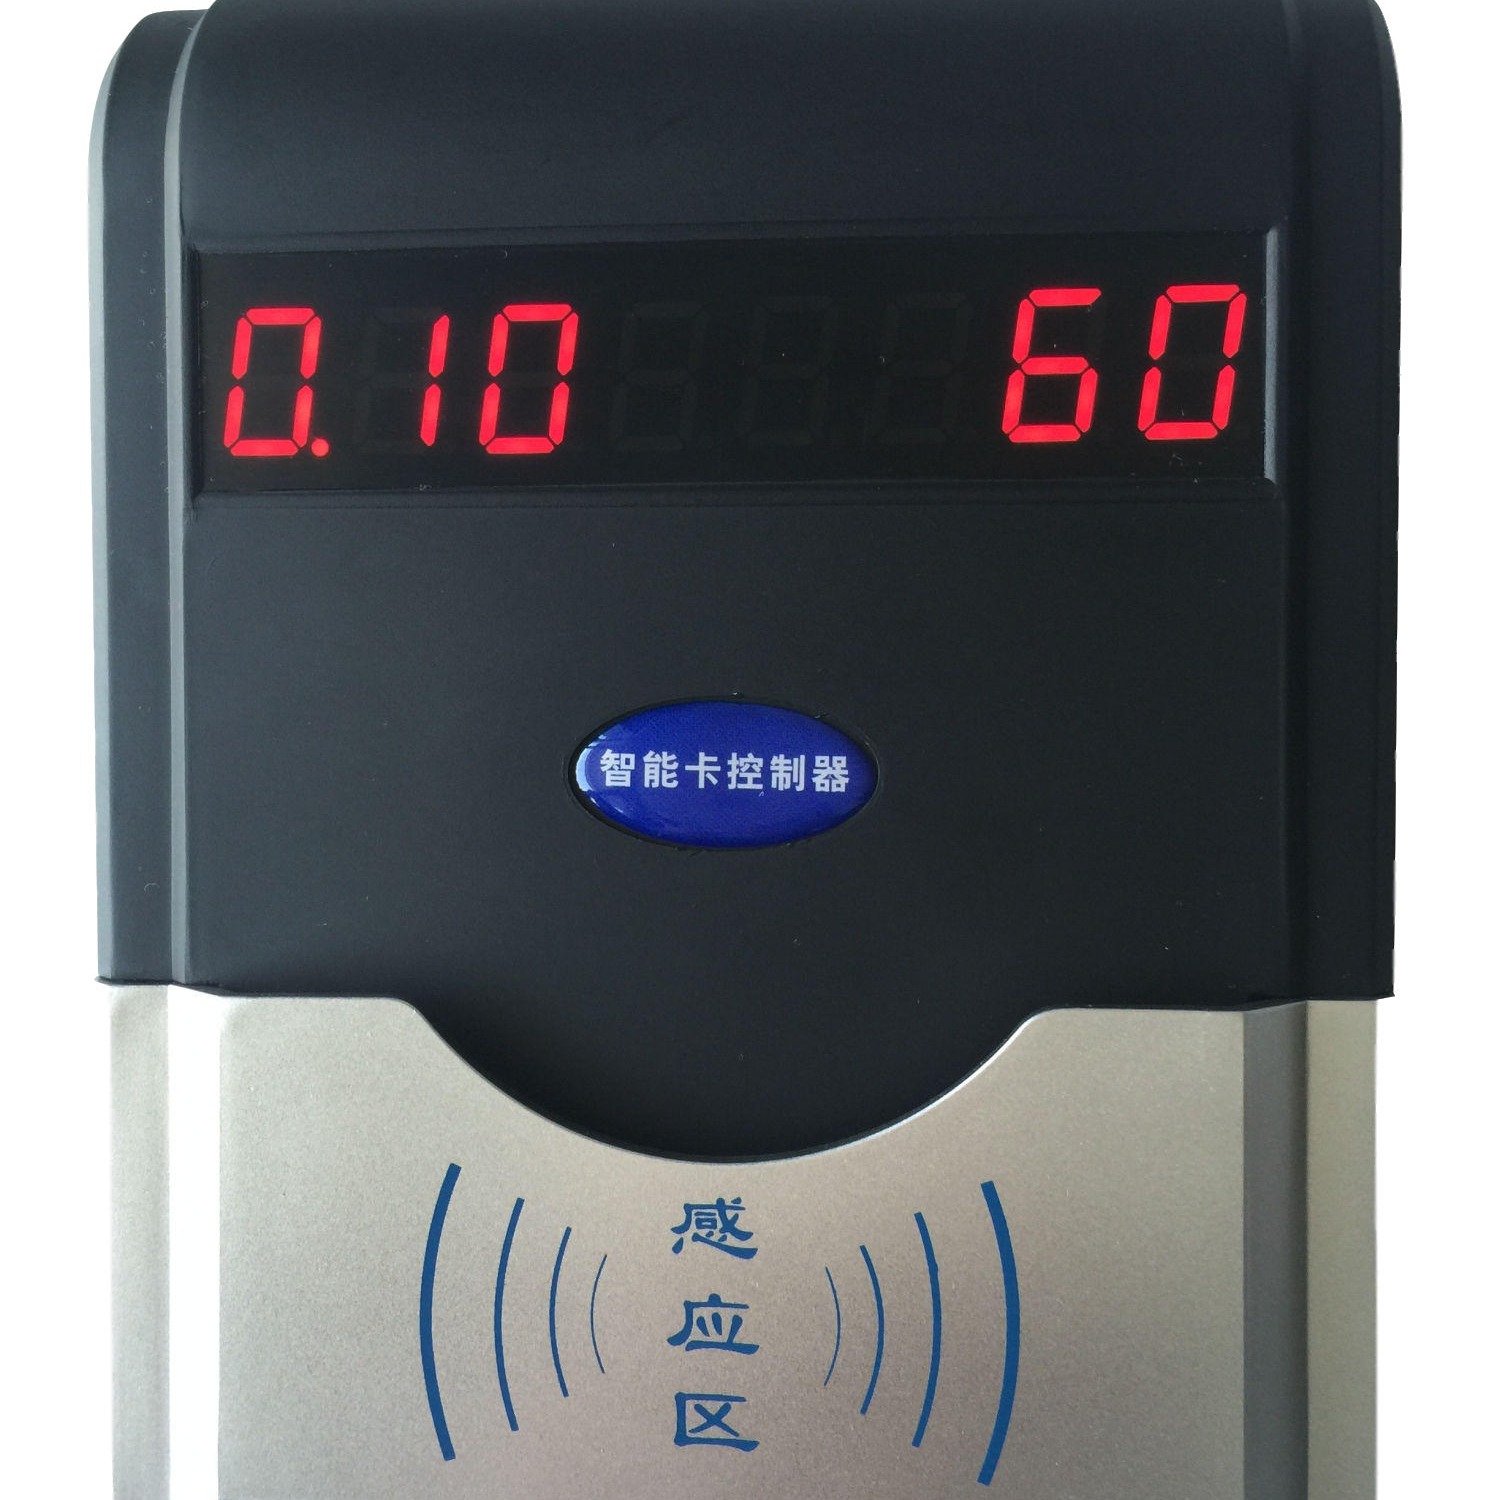 兴天下HF-660智能卡水控机淋浴刷卡控水机,刷卡淋浴计费器